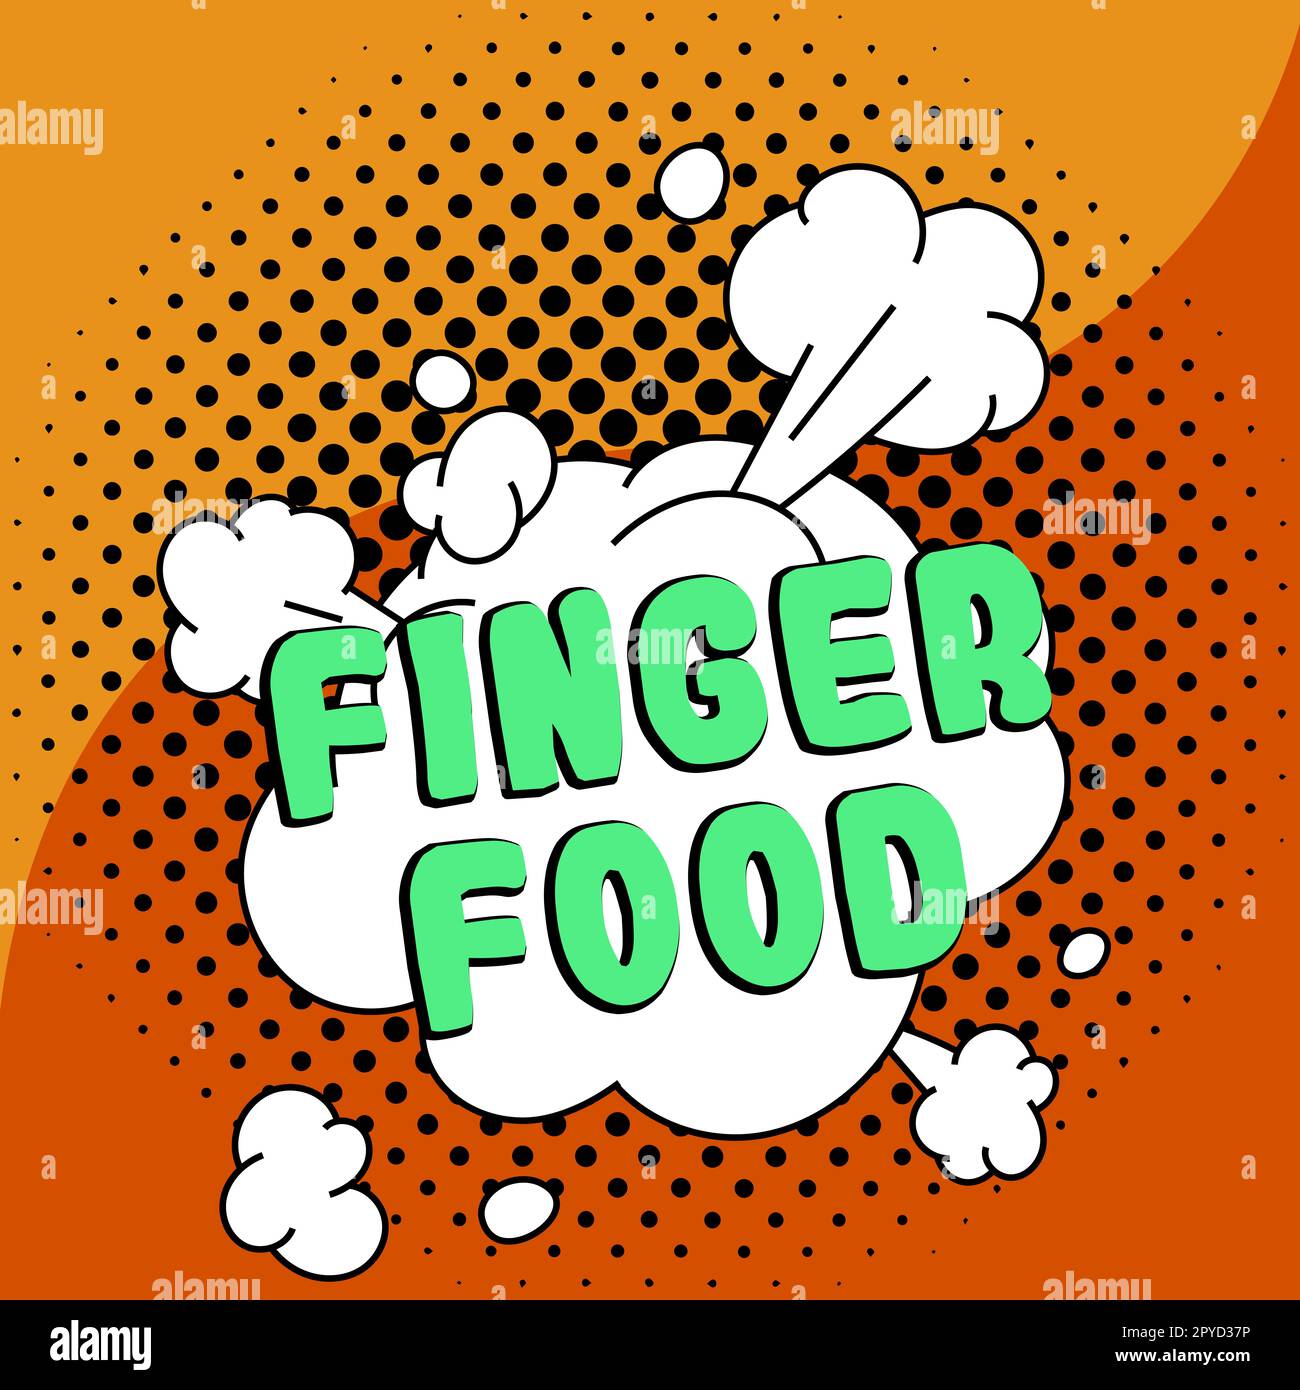 Affiche présentant des aliments pour les doigts. Internet concept produits et digestifs qui doit être tenu avec les doigts pour manger Banque D'Images